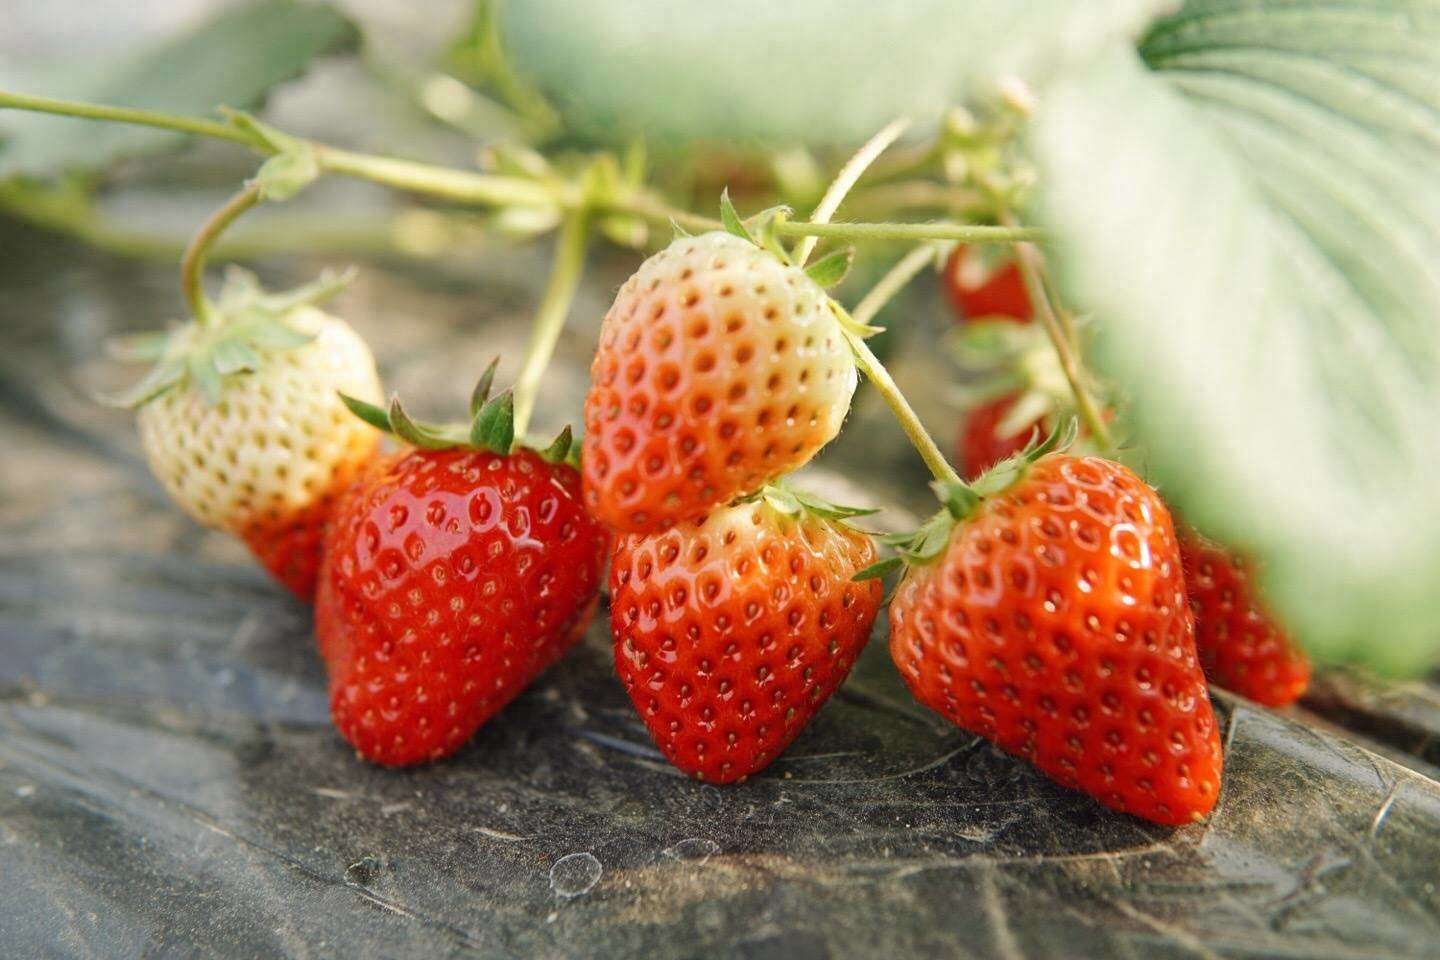 车汇总_椒盐味草莓_草莓味_椒盐味草莓